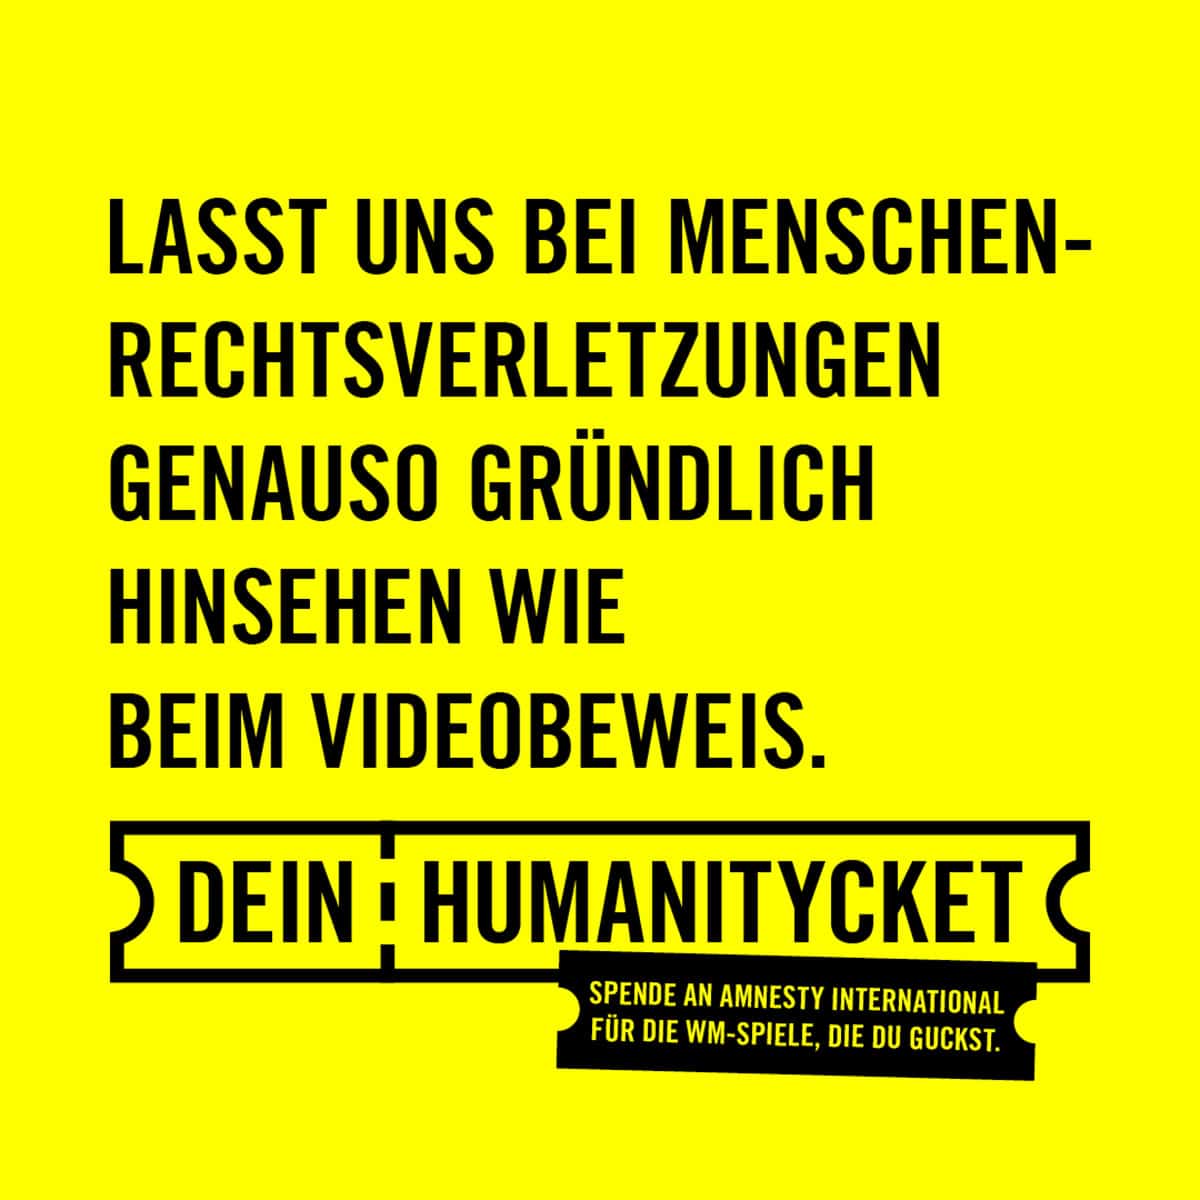 Im leuchtenden gelb der Amnesty International Organisation mit schwarzer Typo steht: Lasst uns bei Menschenrechtsverletzungen genauso gründlich hinsehen wie beim Videobeweis